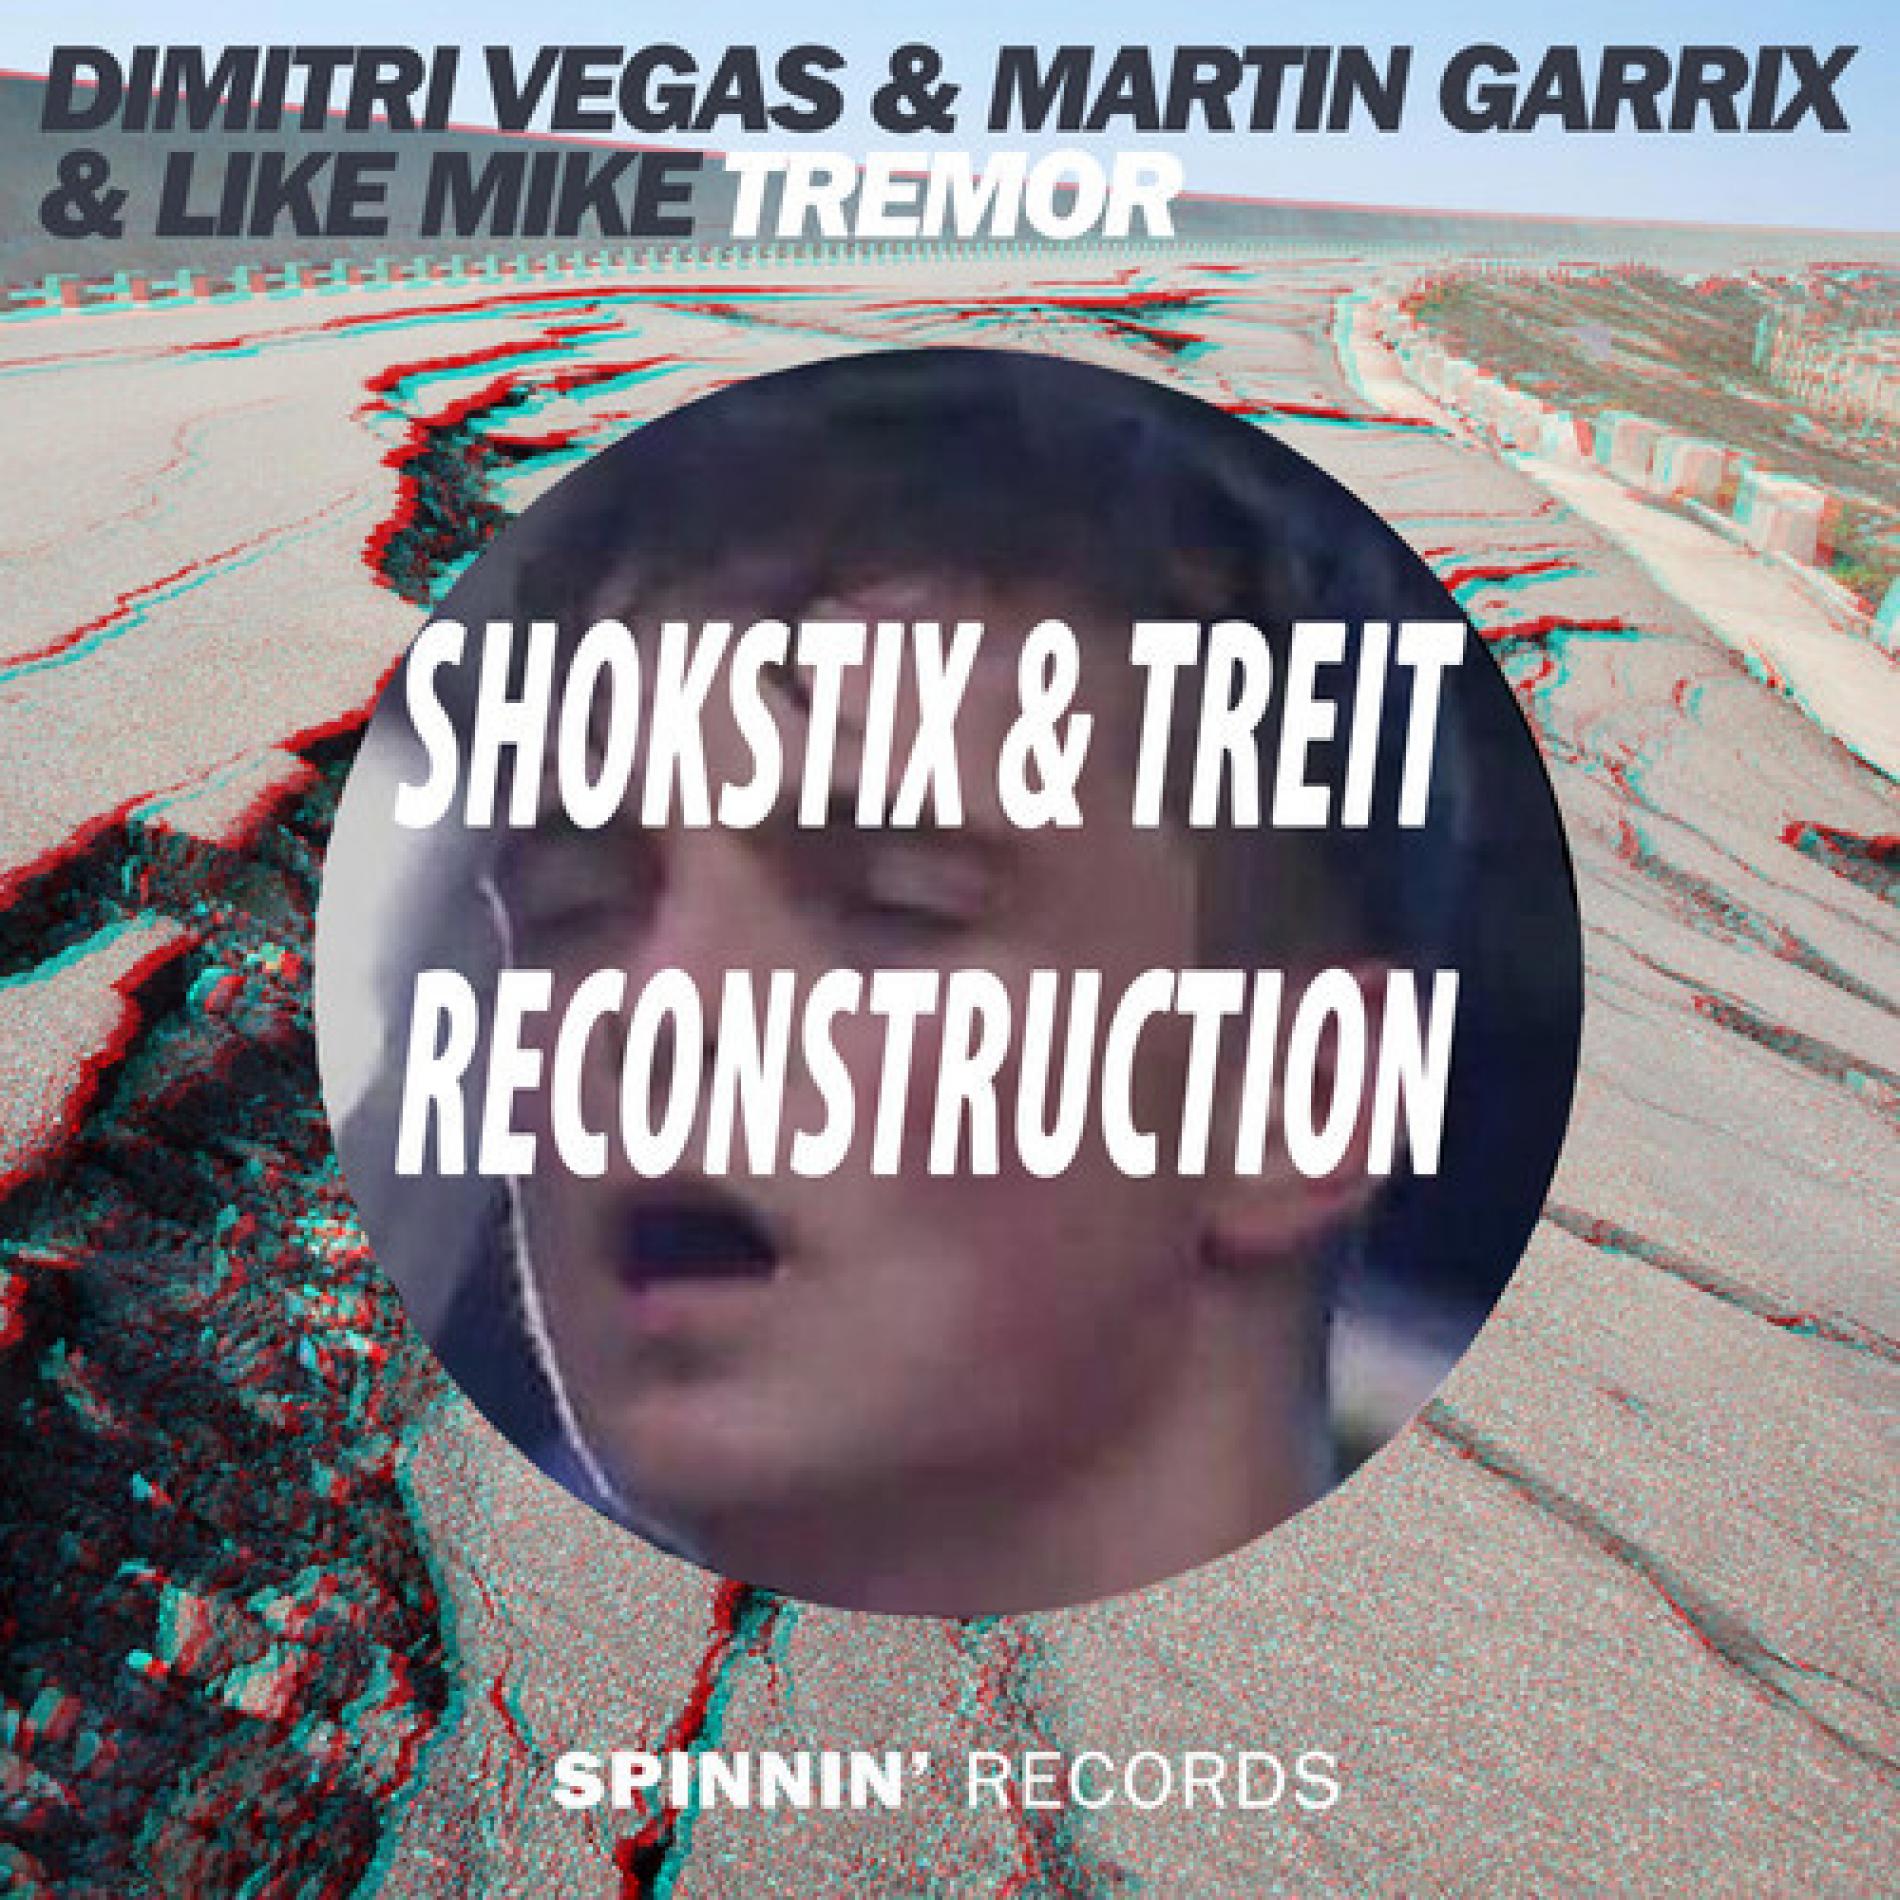 Dimitri Vegas & Like Mike ft. Martin Garrix- Tremor (Shokstix & Treit Reconstruction)